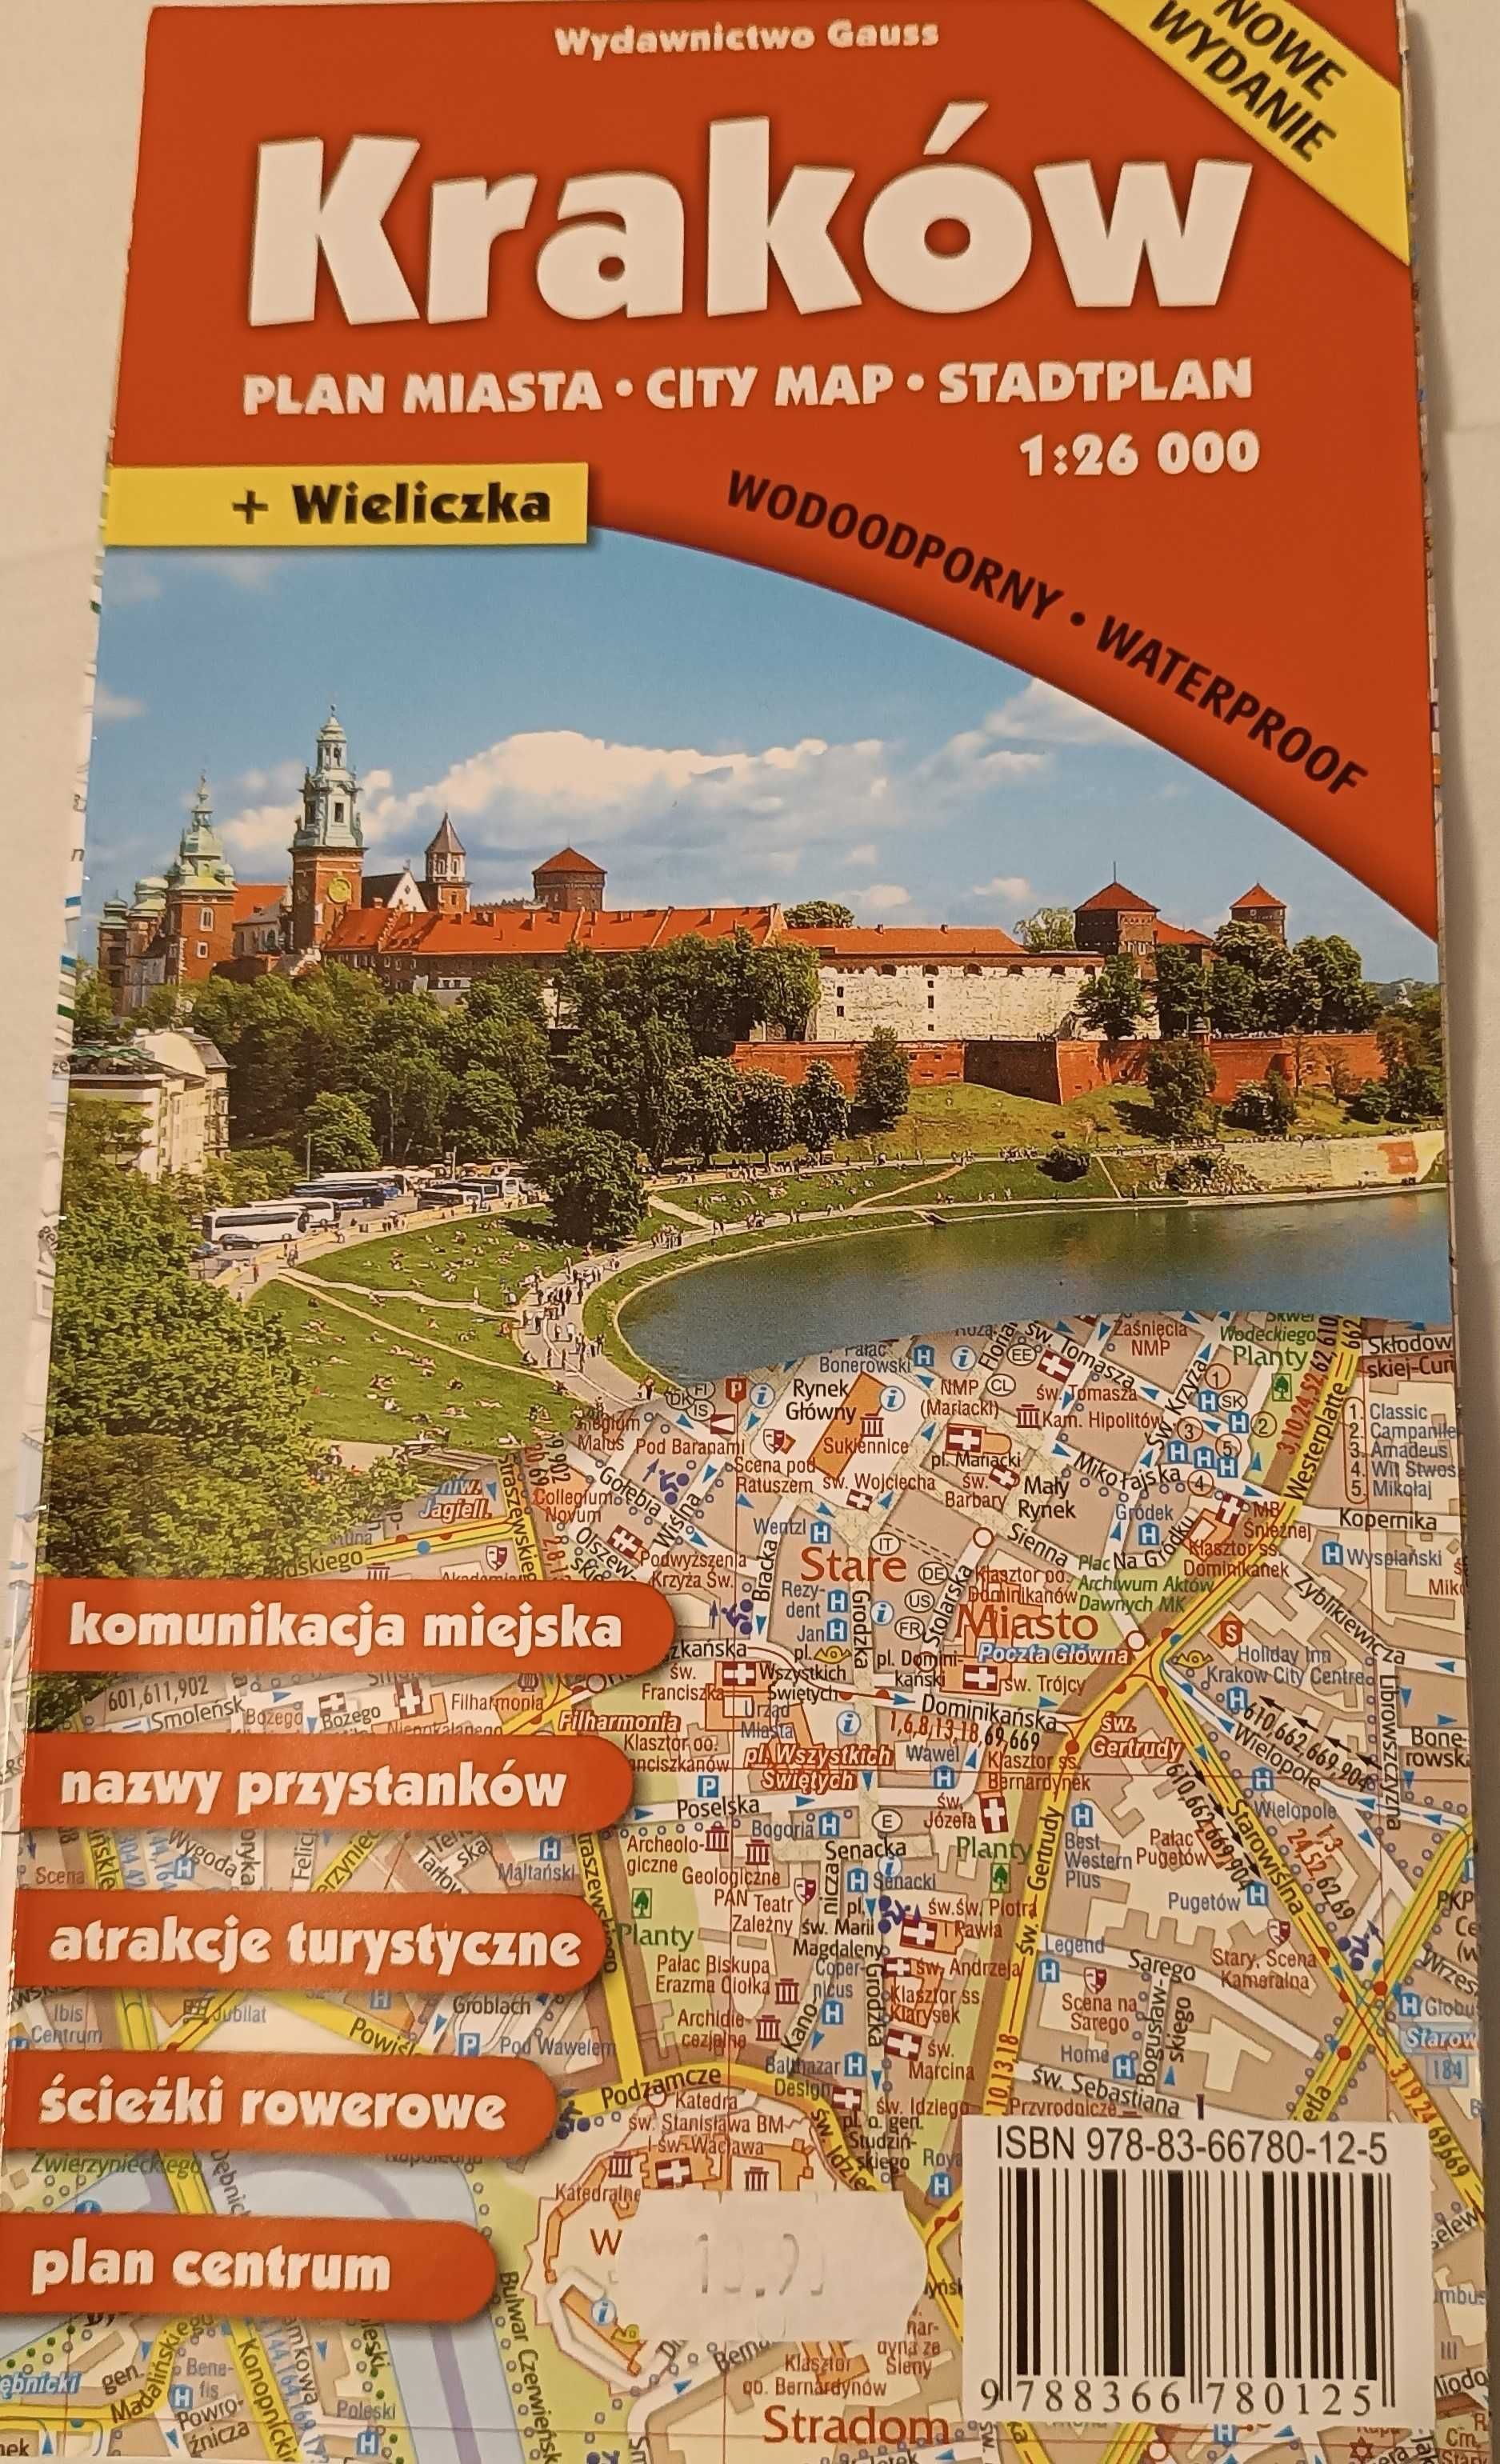 Kraków plan miasta Wydawnictwo Gauss 1:26000